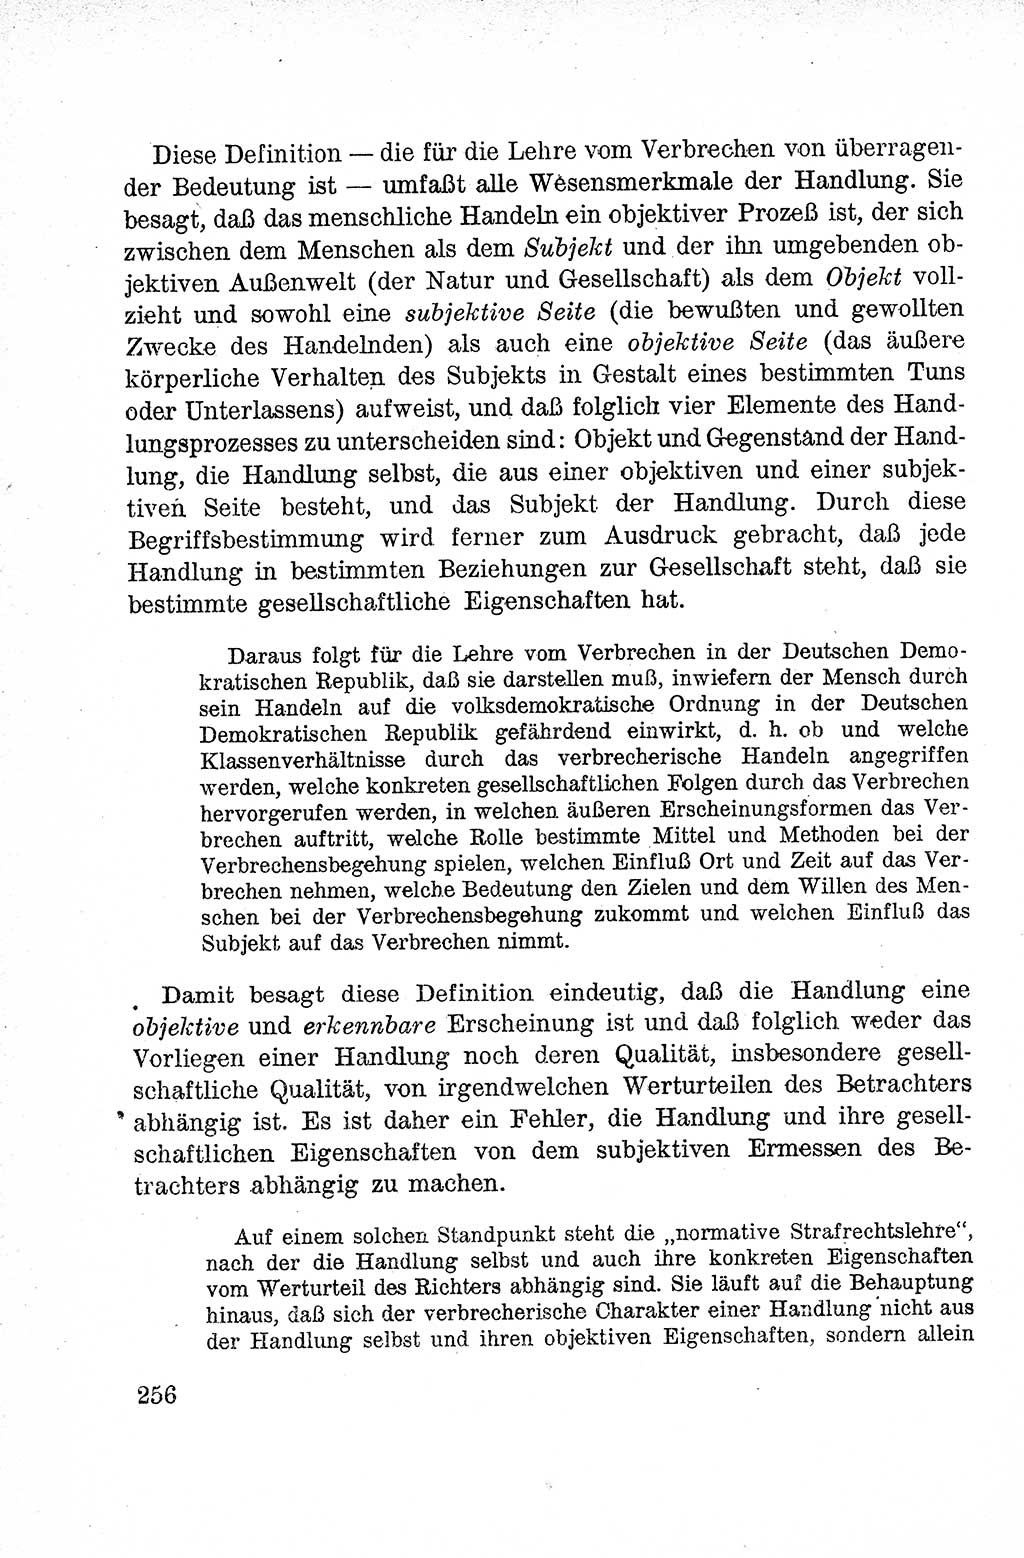 Lehrbuch des Strafrechts der Deutschen Demokratischen Republik (DDR), Allgemeiner Teil 1959, Seite 256 (Lb. Strafr. DDR AT 1959, S. 256)